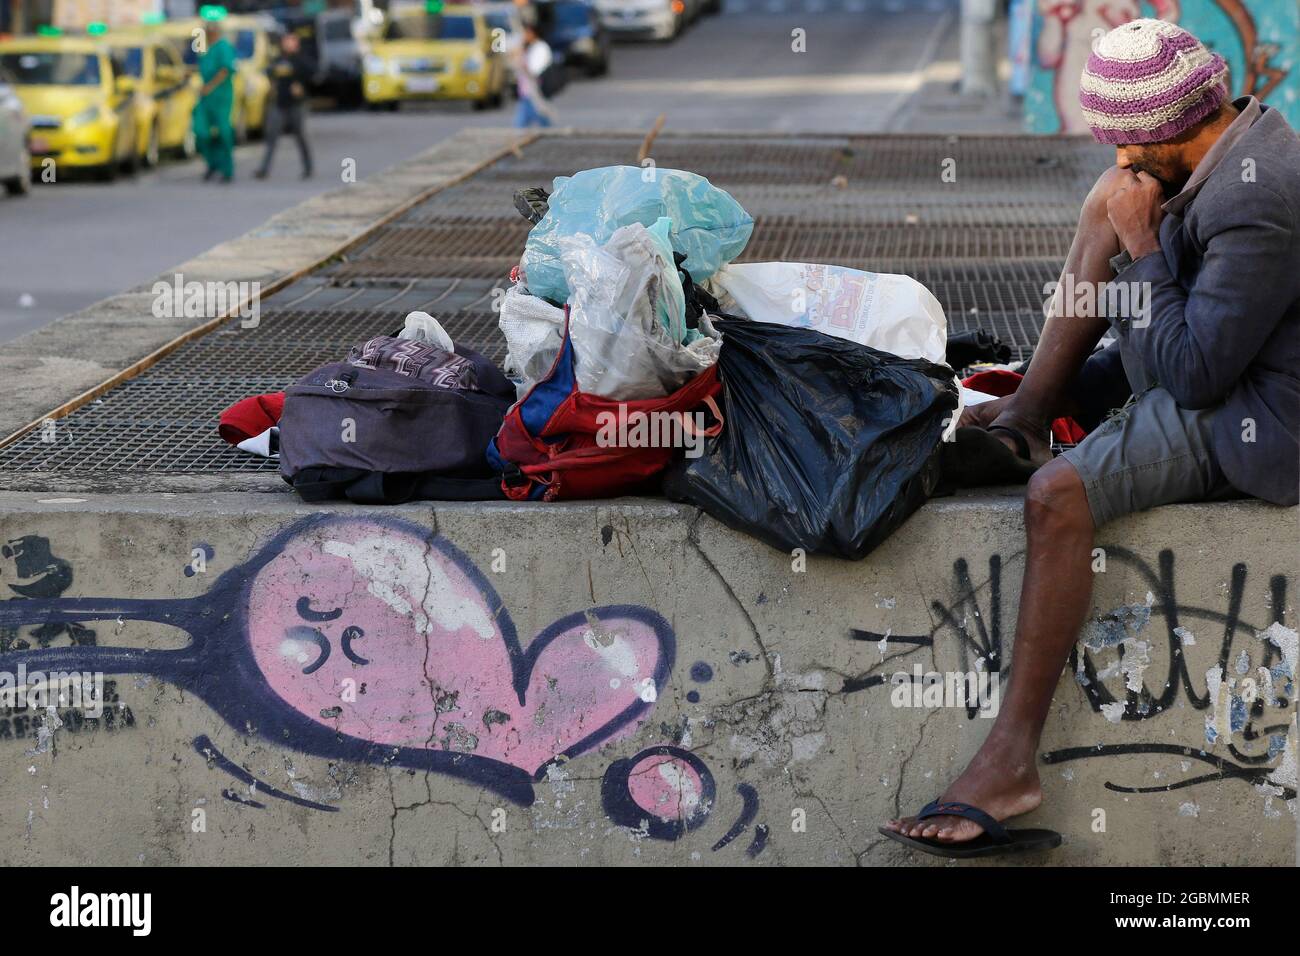 Uomo senza casa, mendicante vivere su un marciapiede durante la crisi economica in centro, in cerca di aiuto, affamato. Povertà situazione vulnerabile, problemi sociali in lat Foto Stock